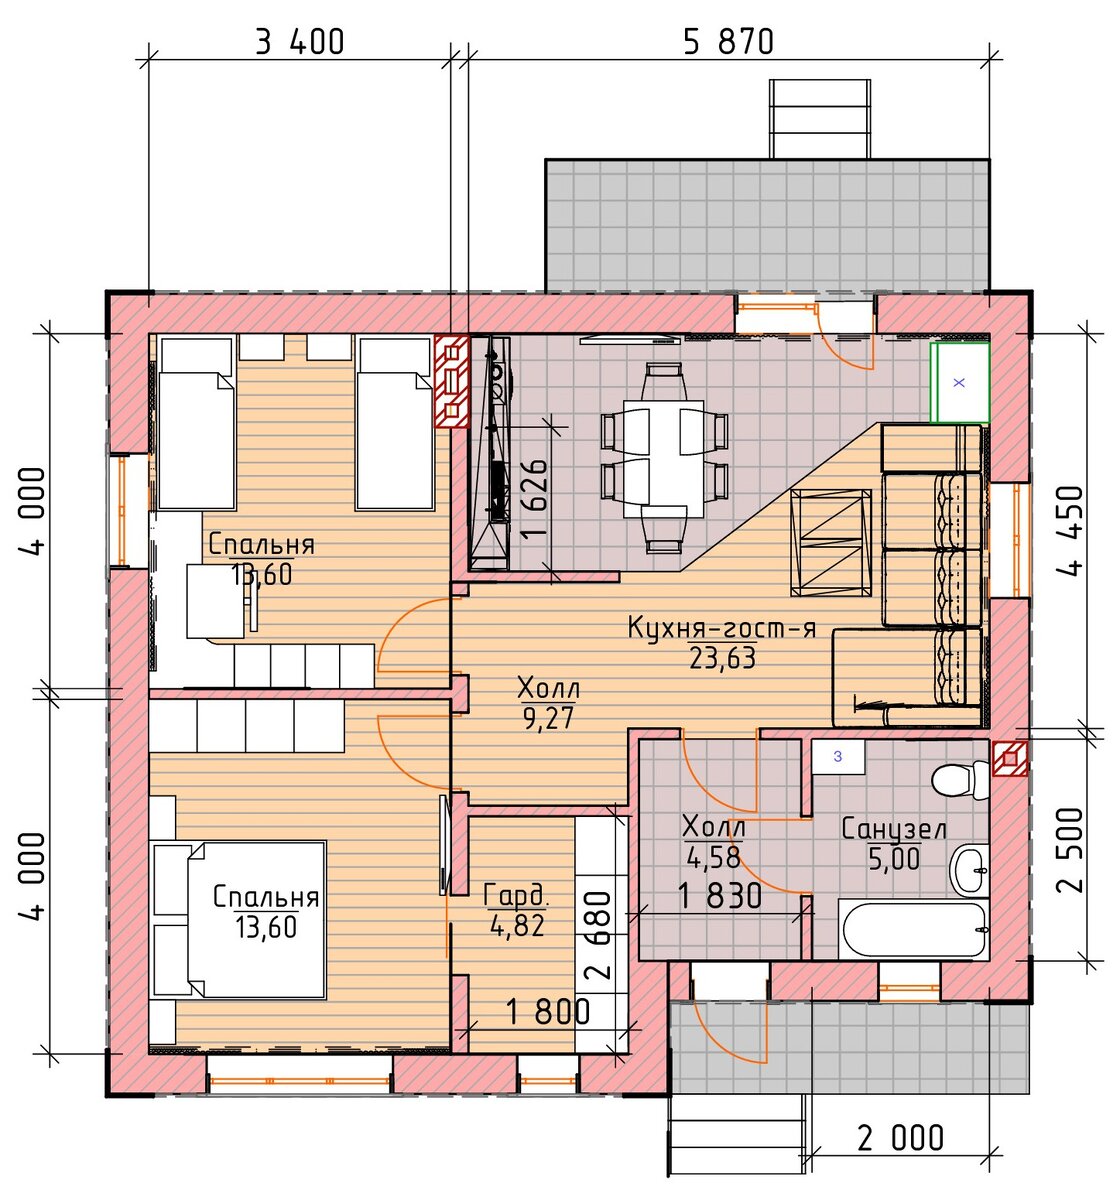 Трехкомнатный одноэтажный дом 9 х 11 м., из кирпича, площадью 70 кв.м. ??